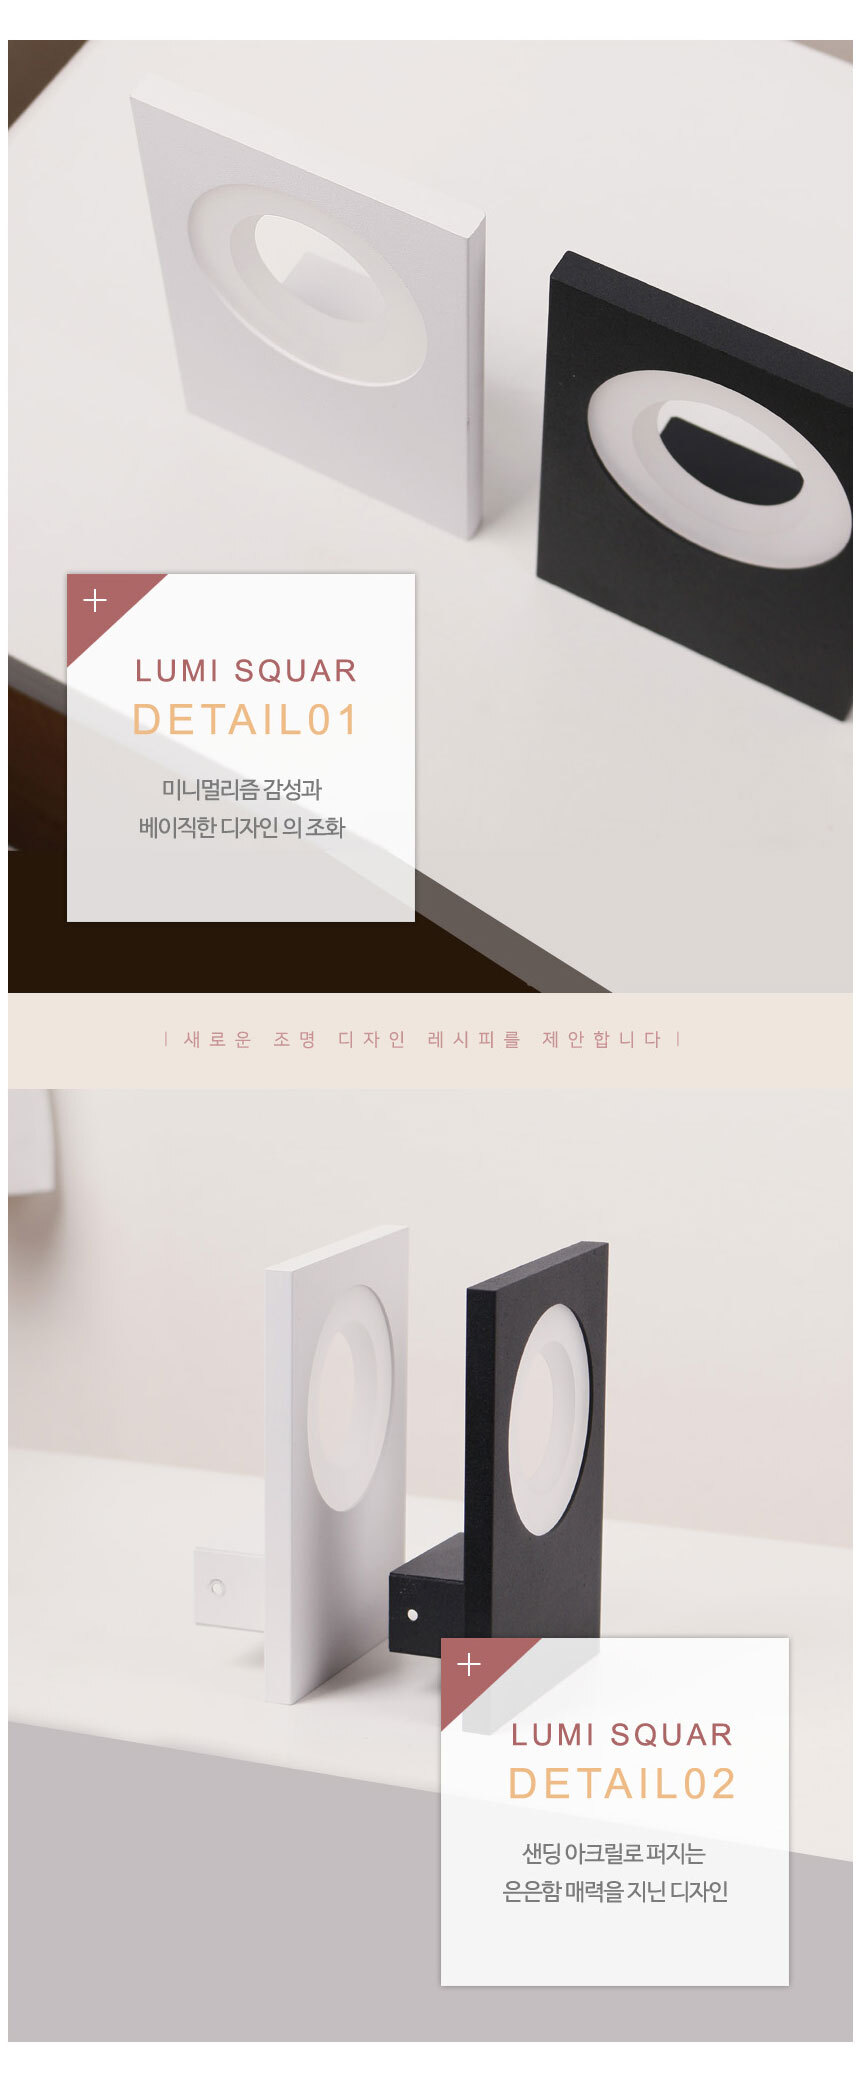 
lumi squar
detail01
미니멀리즘 감성과 베이직한 디자인의 조화
새로운 조명 디자인 레시피를 제안합니다
lumi squar
detail02
샌딩 아크릴로 퍼지는 은은함 매력을 지닌 디자인
